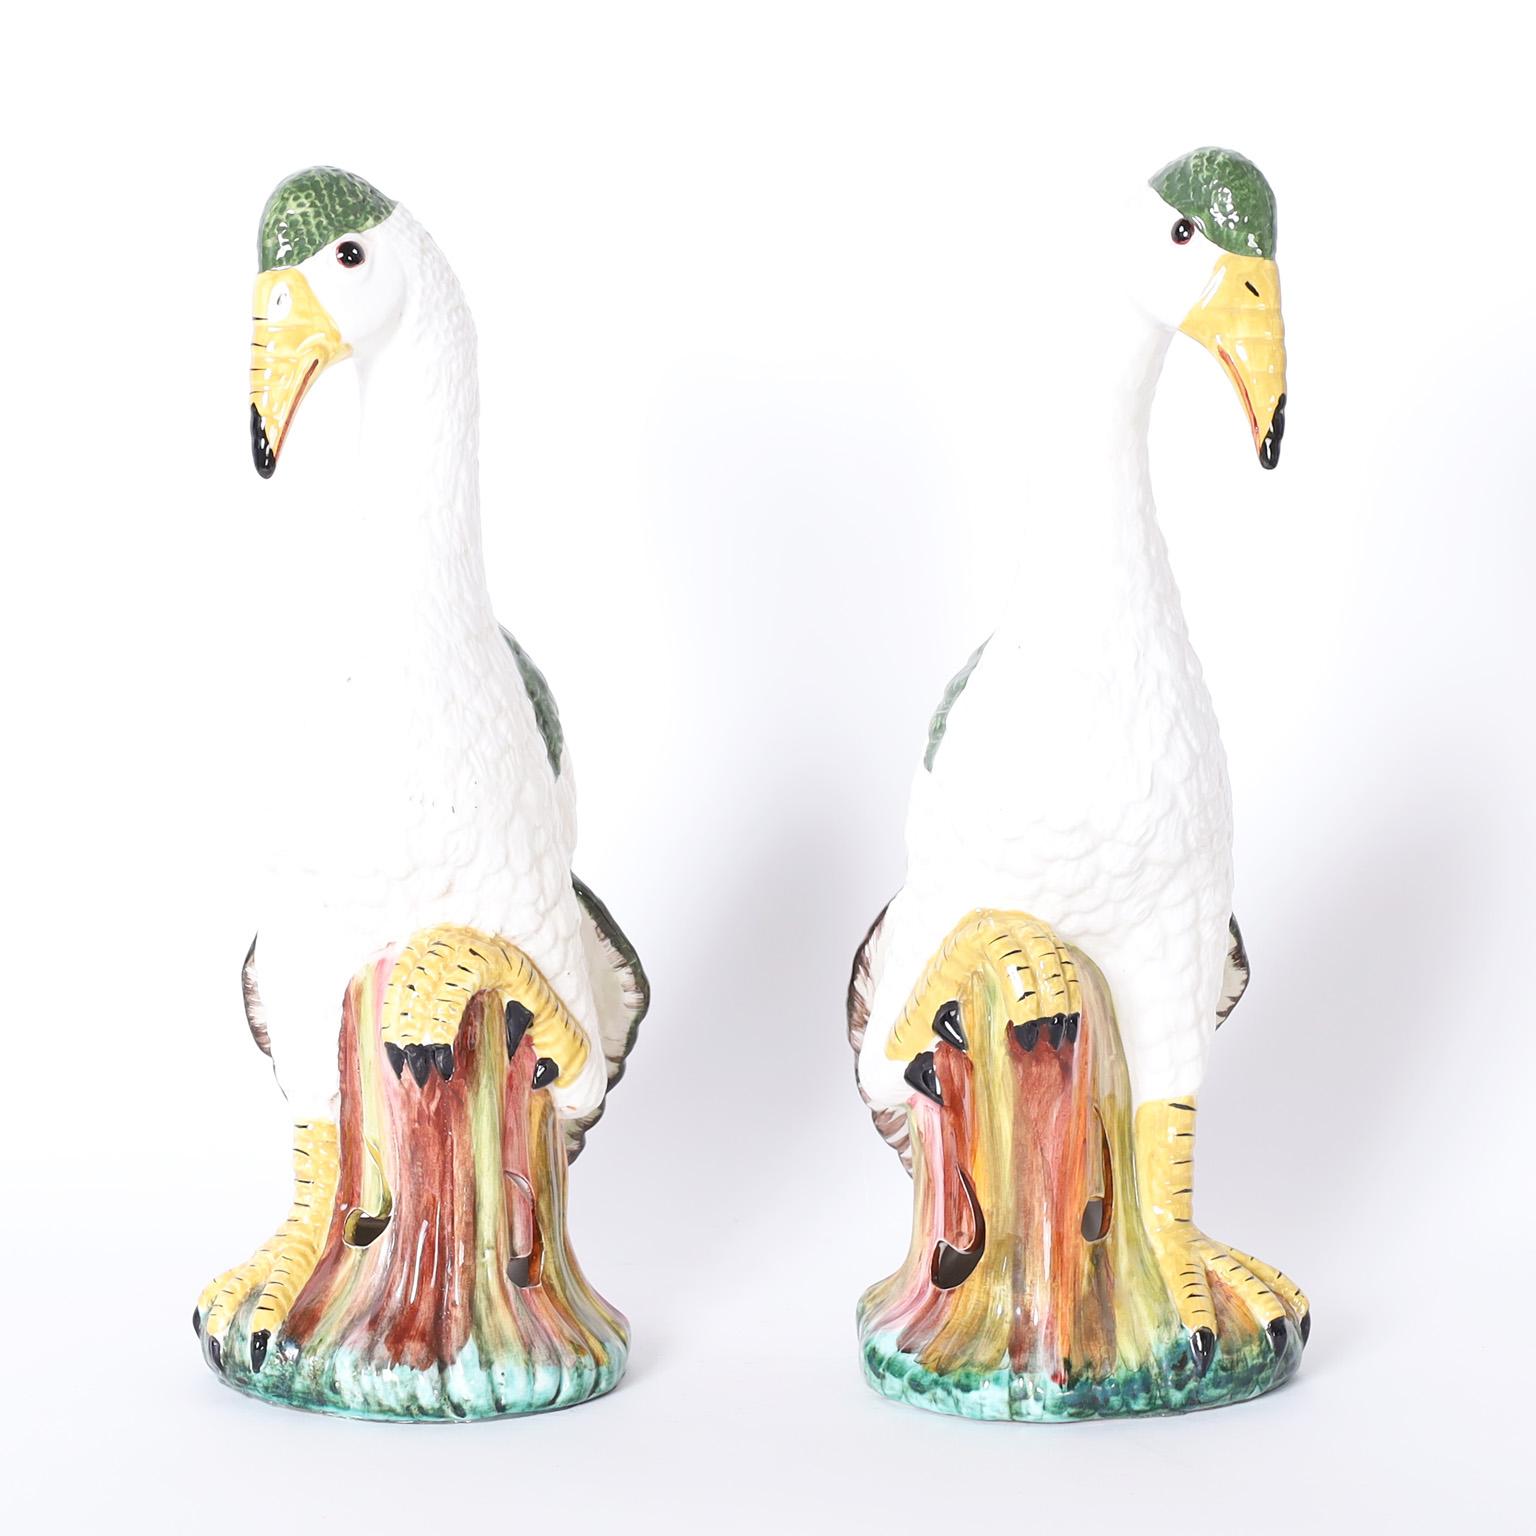 Paire d'oiseaux décoratifs italiens en céramique ou porcelaine majolique, décorés et émaillés. Signé Meiselman sur le bas.